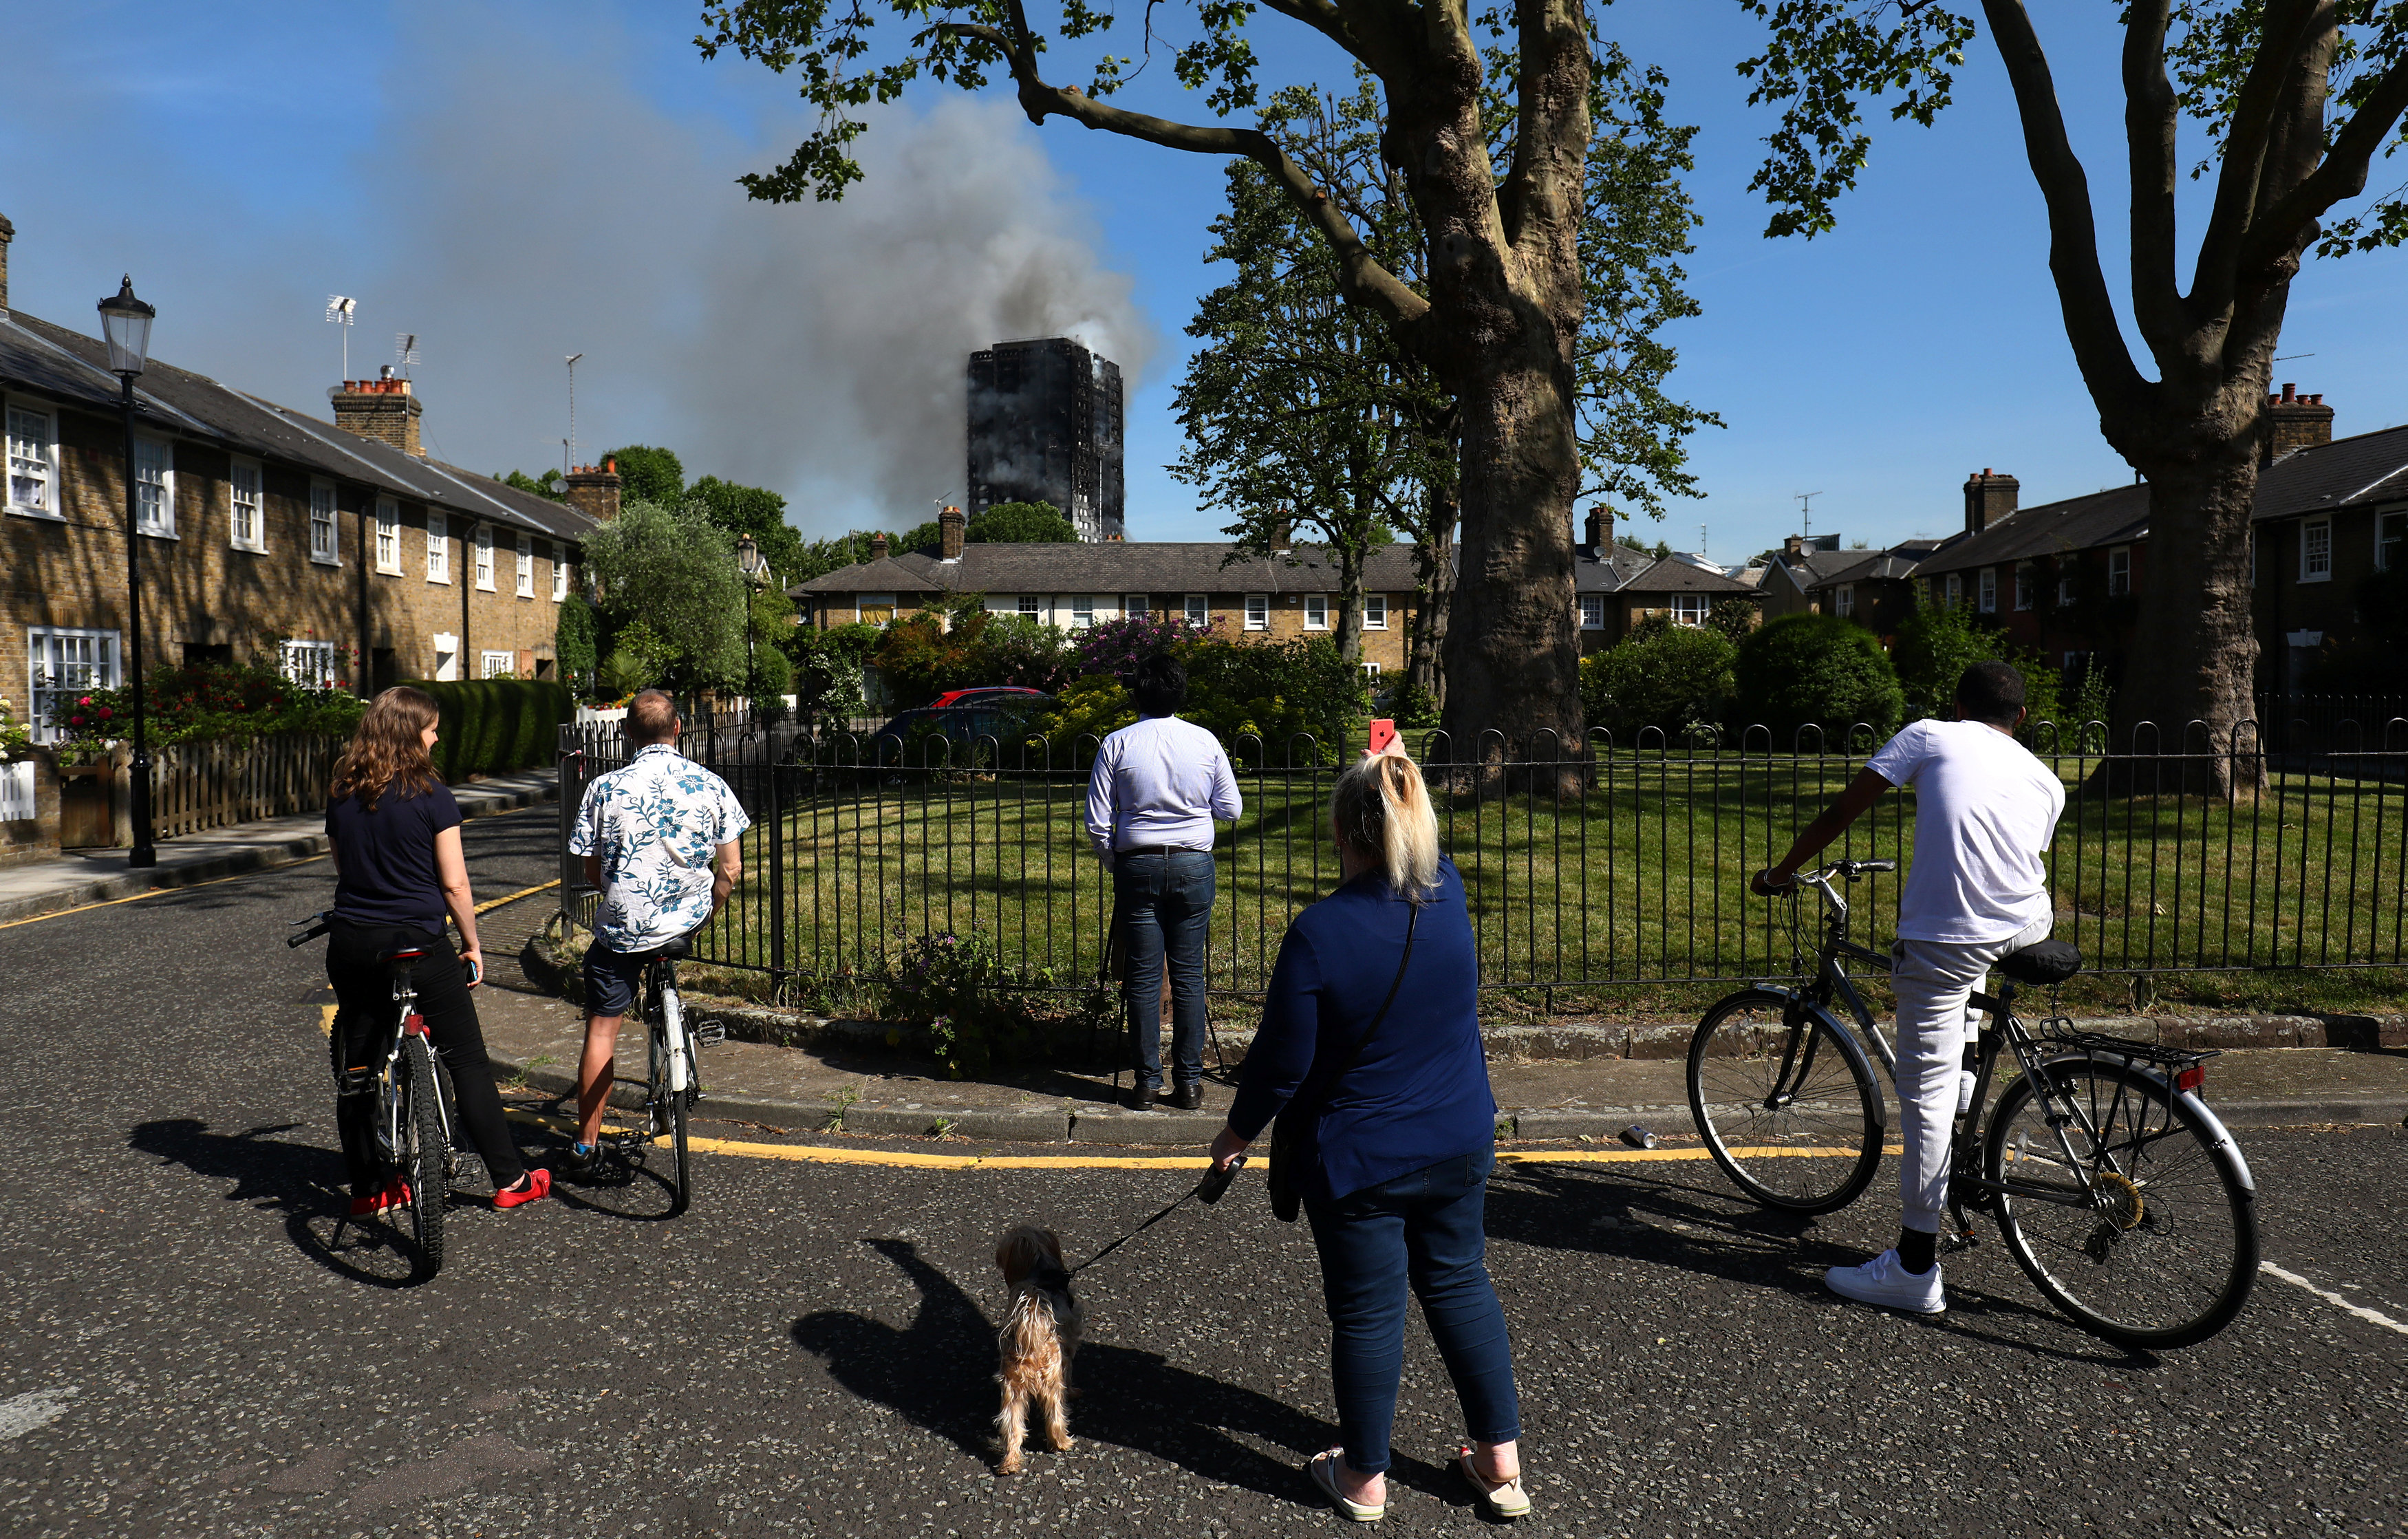 Συγκλονιστικές μαρτυρίες και καταγγελίες για την πυρκαγιά στο Λονδίνο